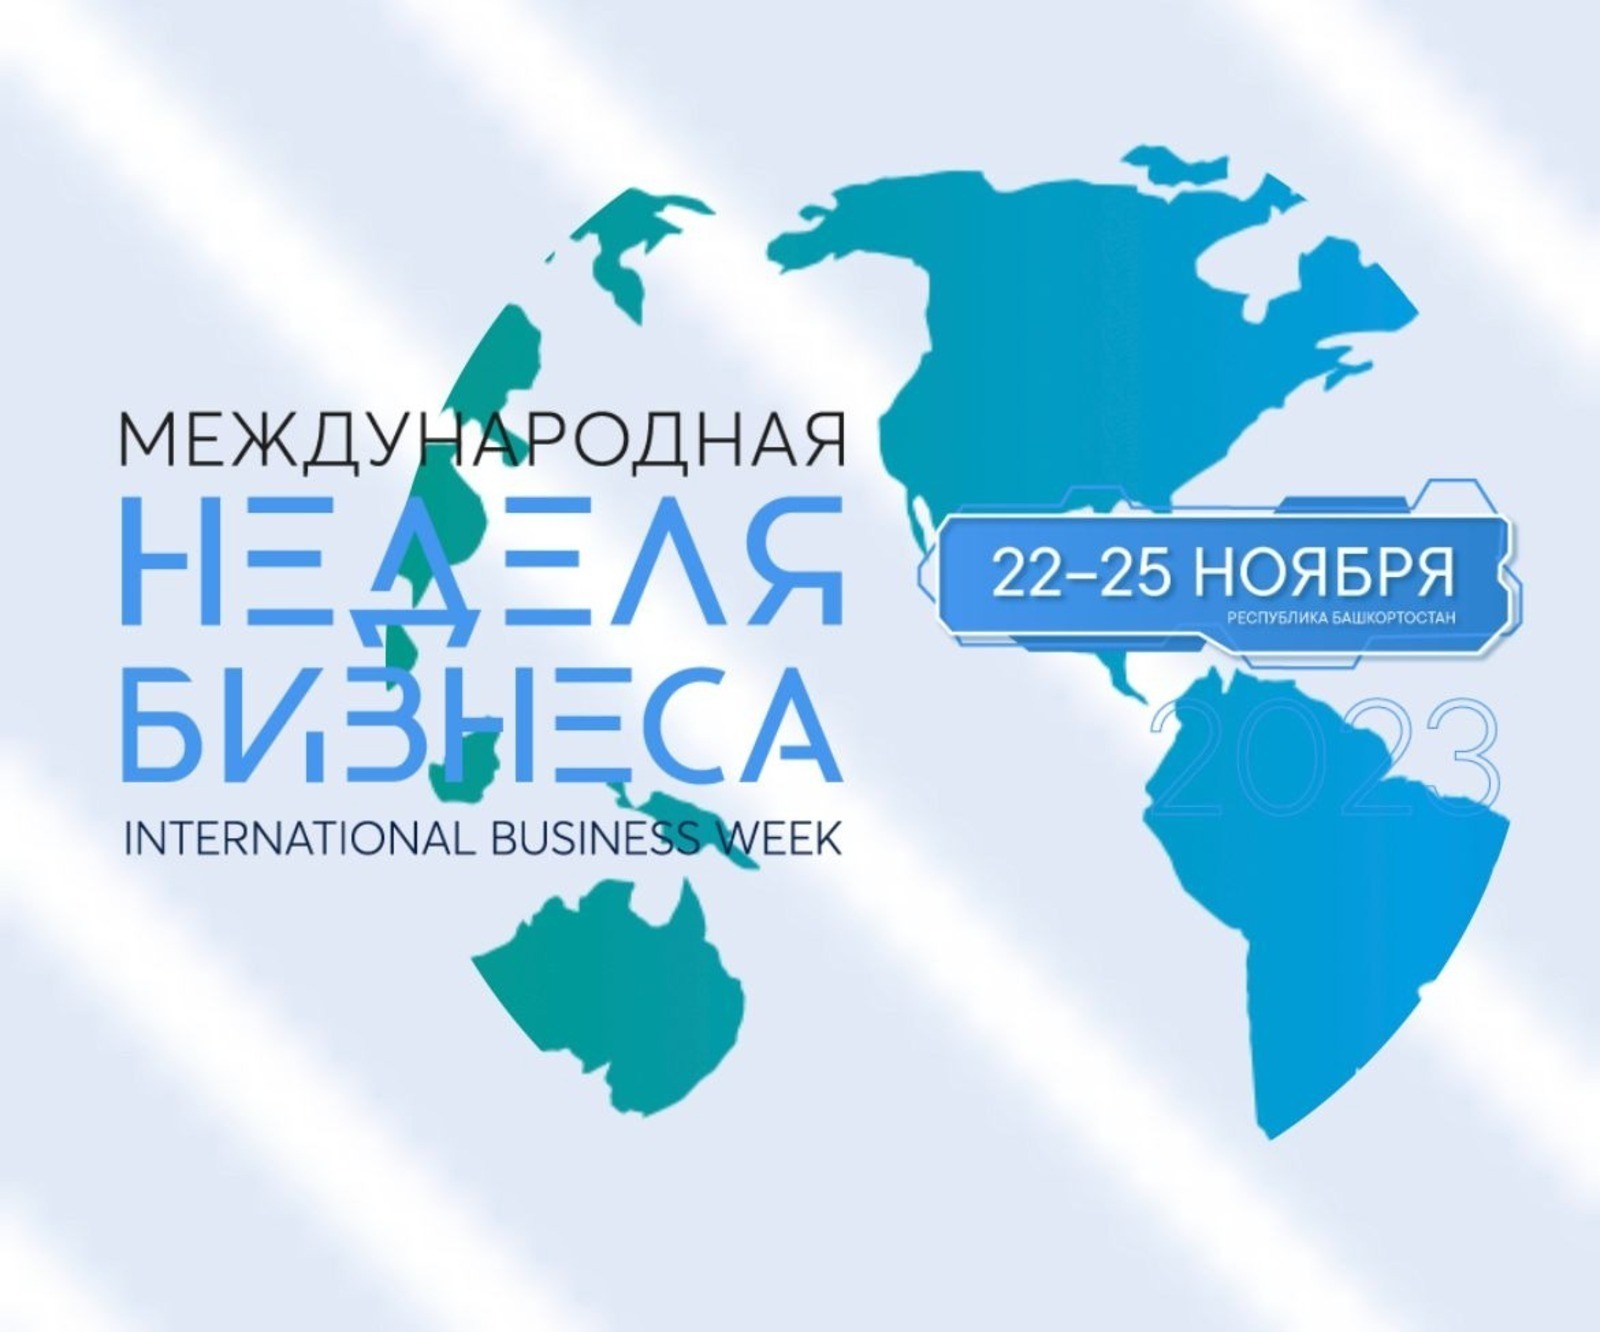 Мария Захарова анонсировала открытие Международной недели бизнеса в Уфе